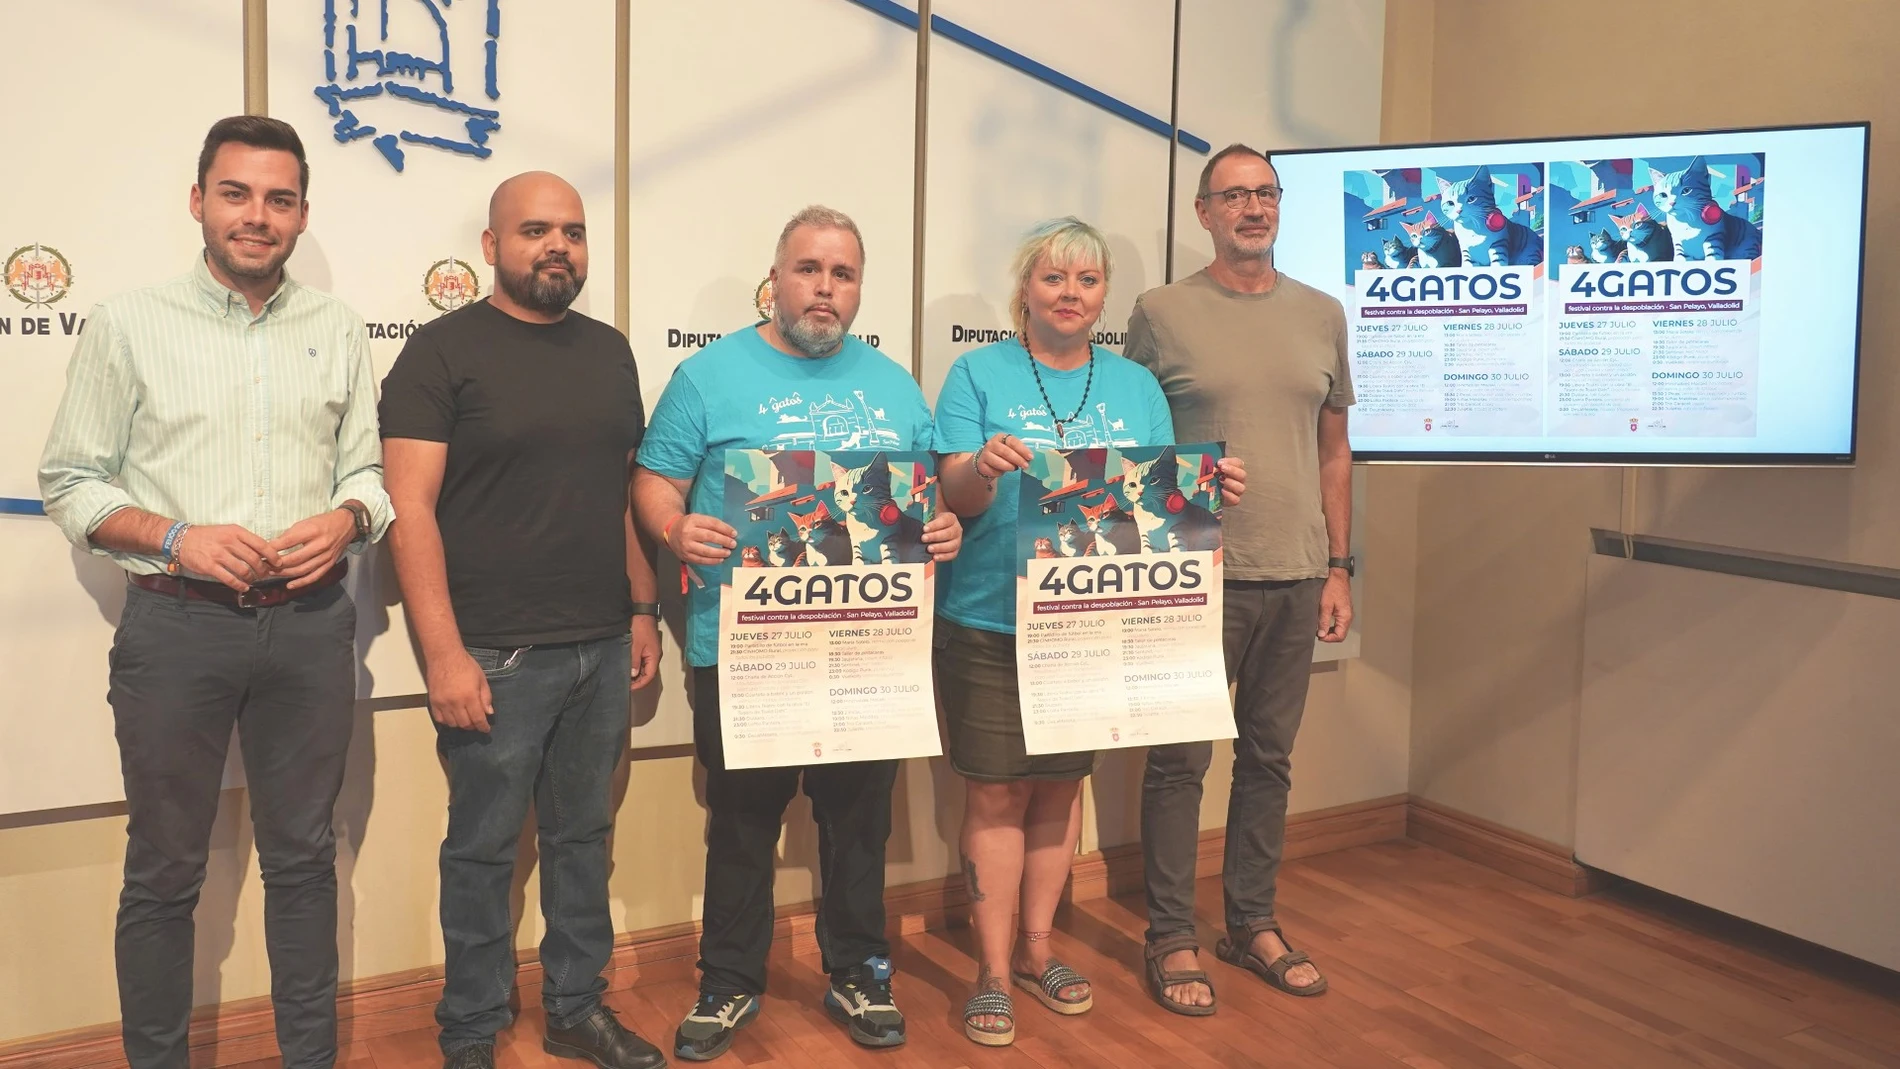 El diputado de Empleo, Desarrollo Económico y Reto Demográfico, Roberto Migallón y la alcaldesa de San Pelayo, Elisa Cerrillo, entre otros, presentan "4 Gatos"